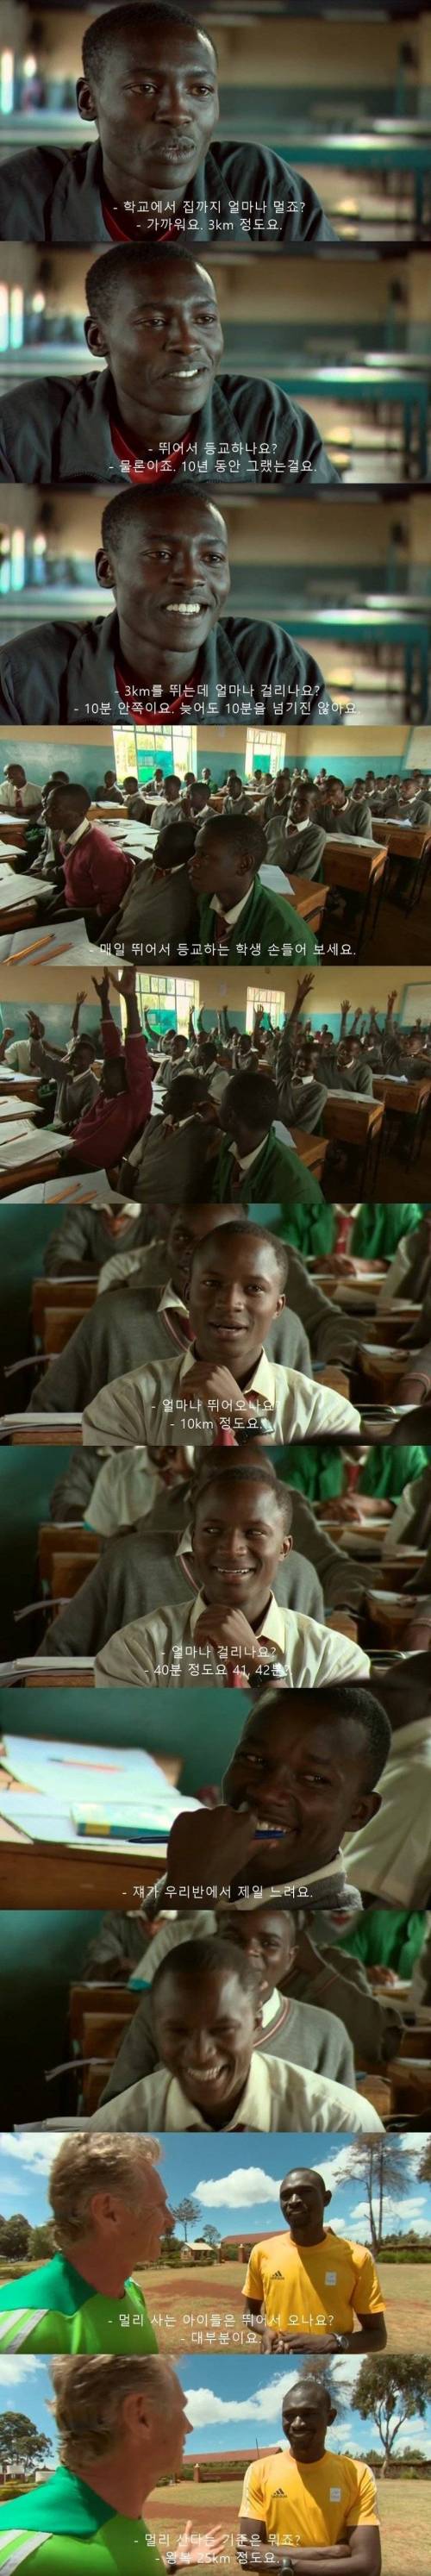 케냐 학생의 익스트림 등교.jpg